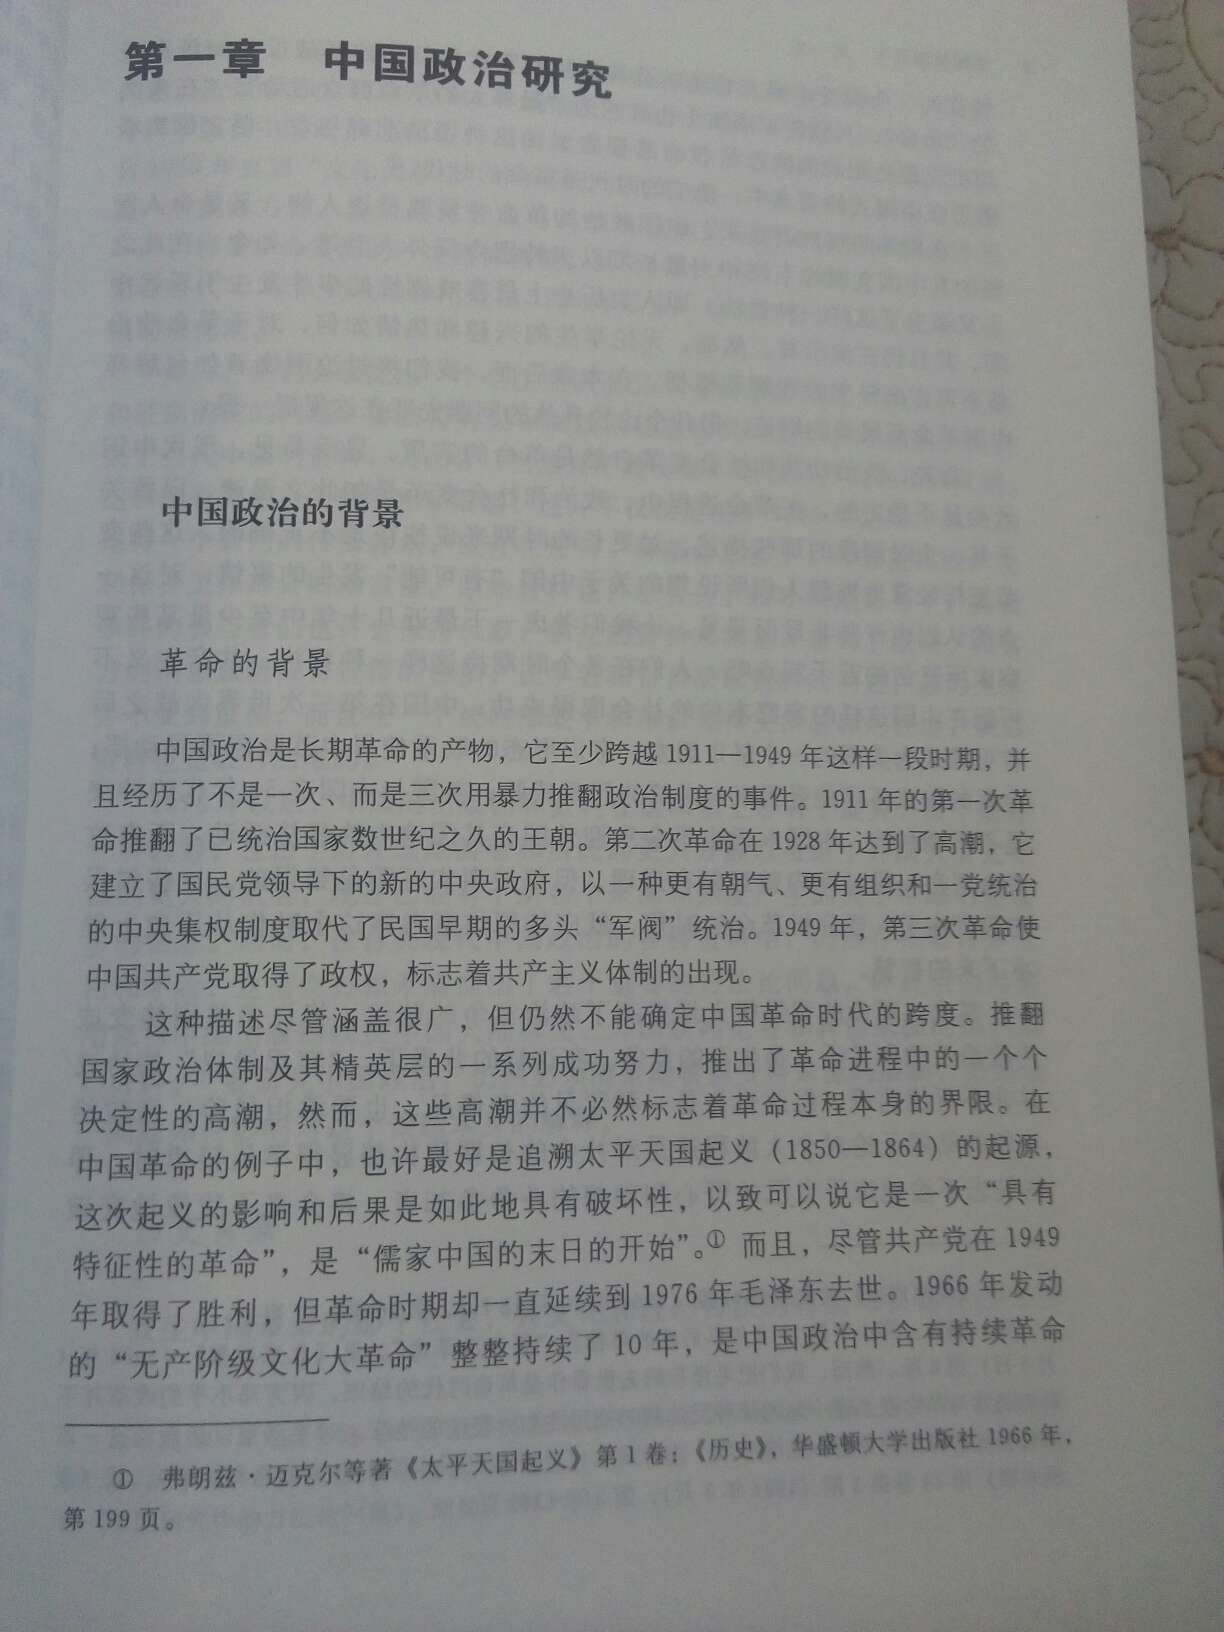 海外中国研究丛书之一，薄薄一本很快就读完了，很耐读。